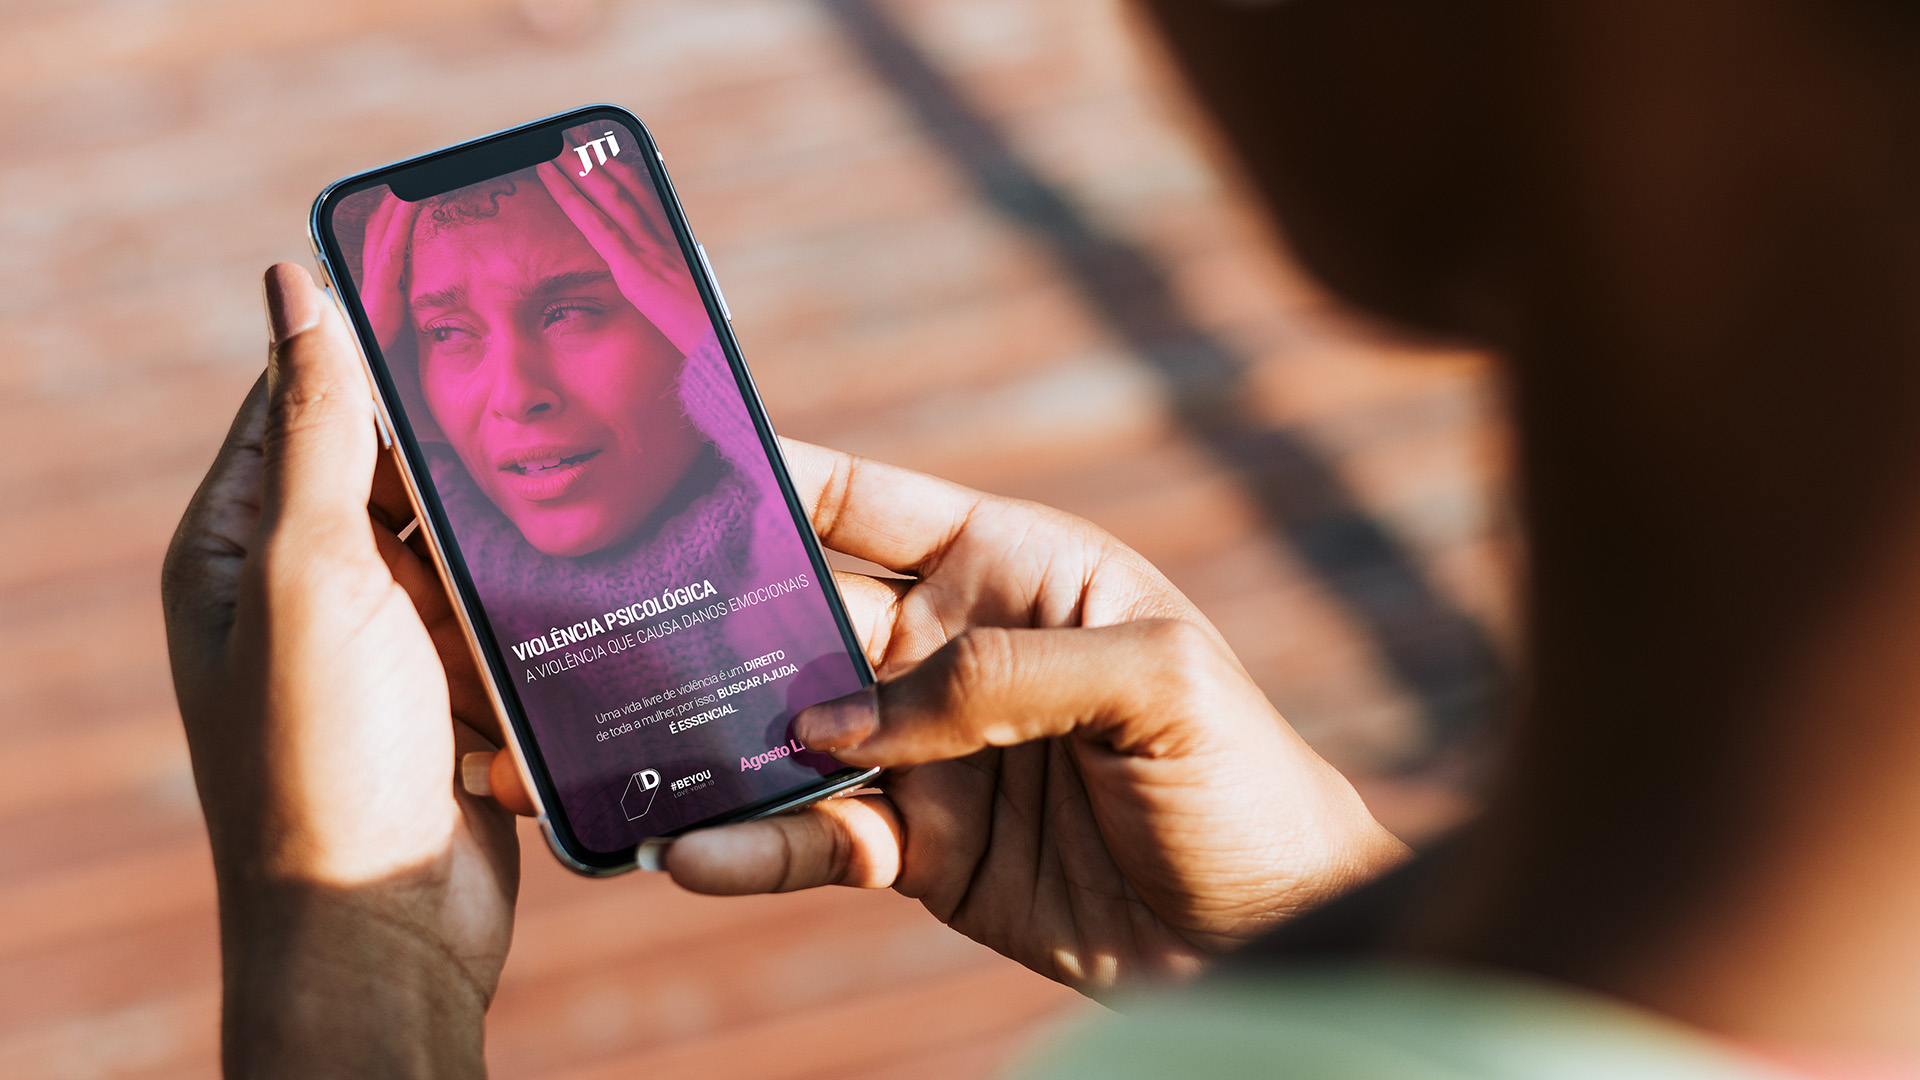 Imagem de smartphone na mão de uma pessoa com imagem da campanha Agosto Lilás JTI na tela.